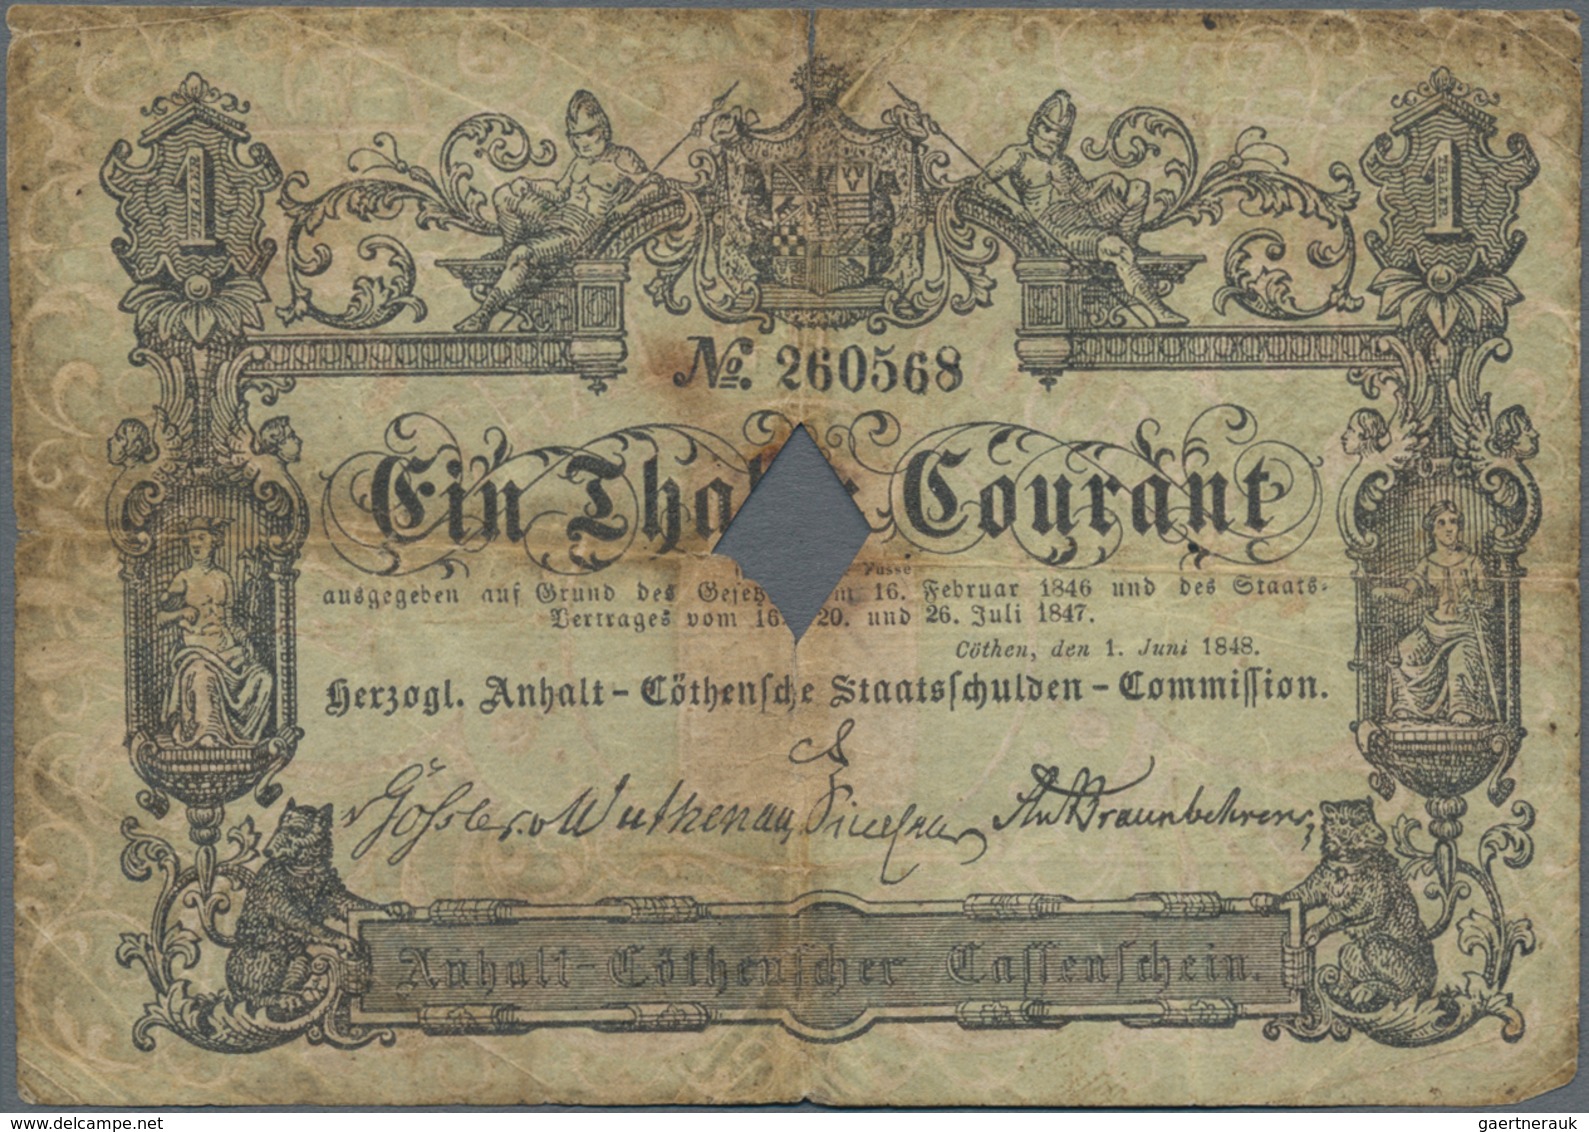 Deutschland - Altdeutsche Staaten: Herzogl. Anhalt-Cöthensche Staatsschulden-Commission 1 Thaler 184 - [ 1] …-1871 : Stati Tedeschi